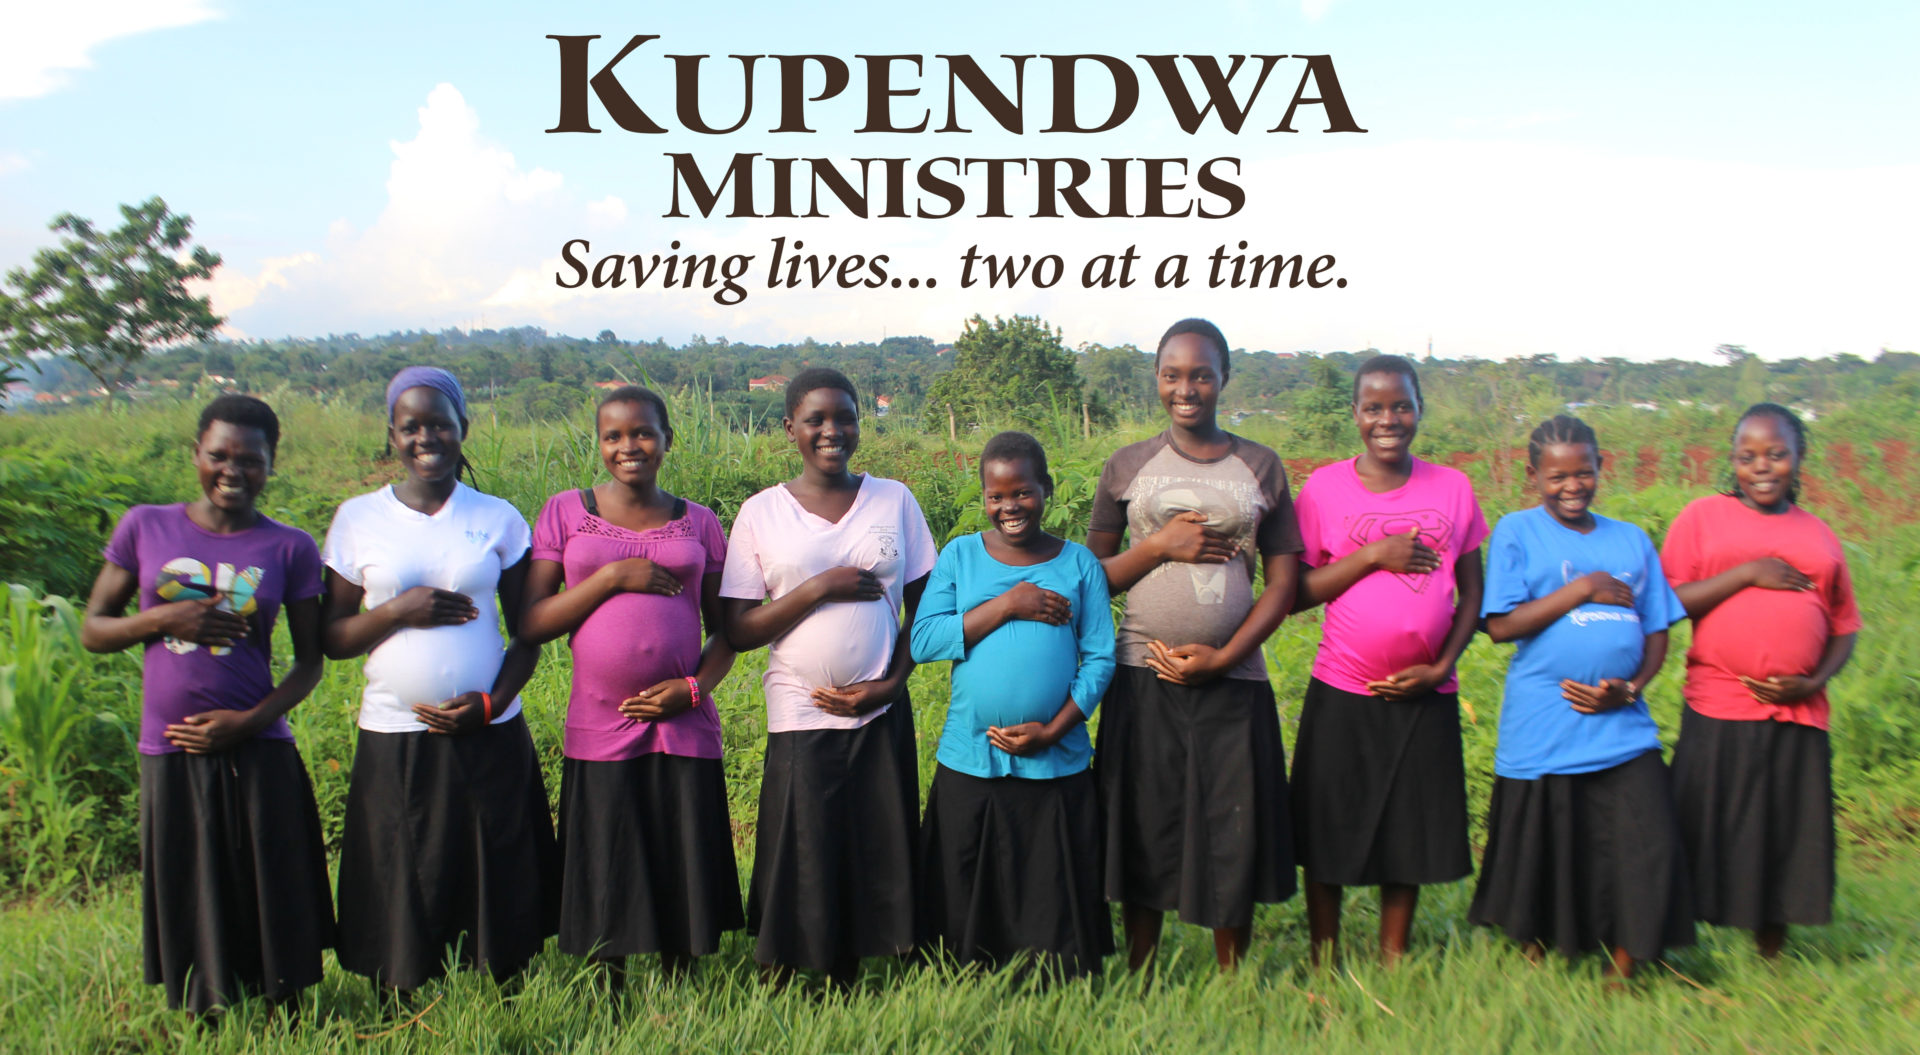 Kupendwa Ministries